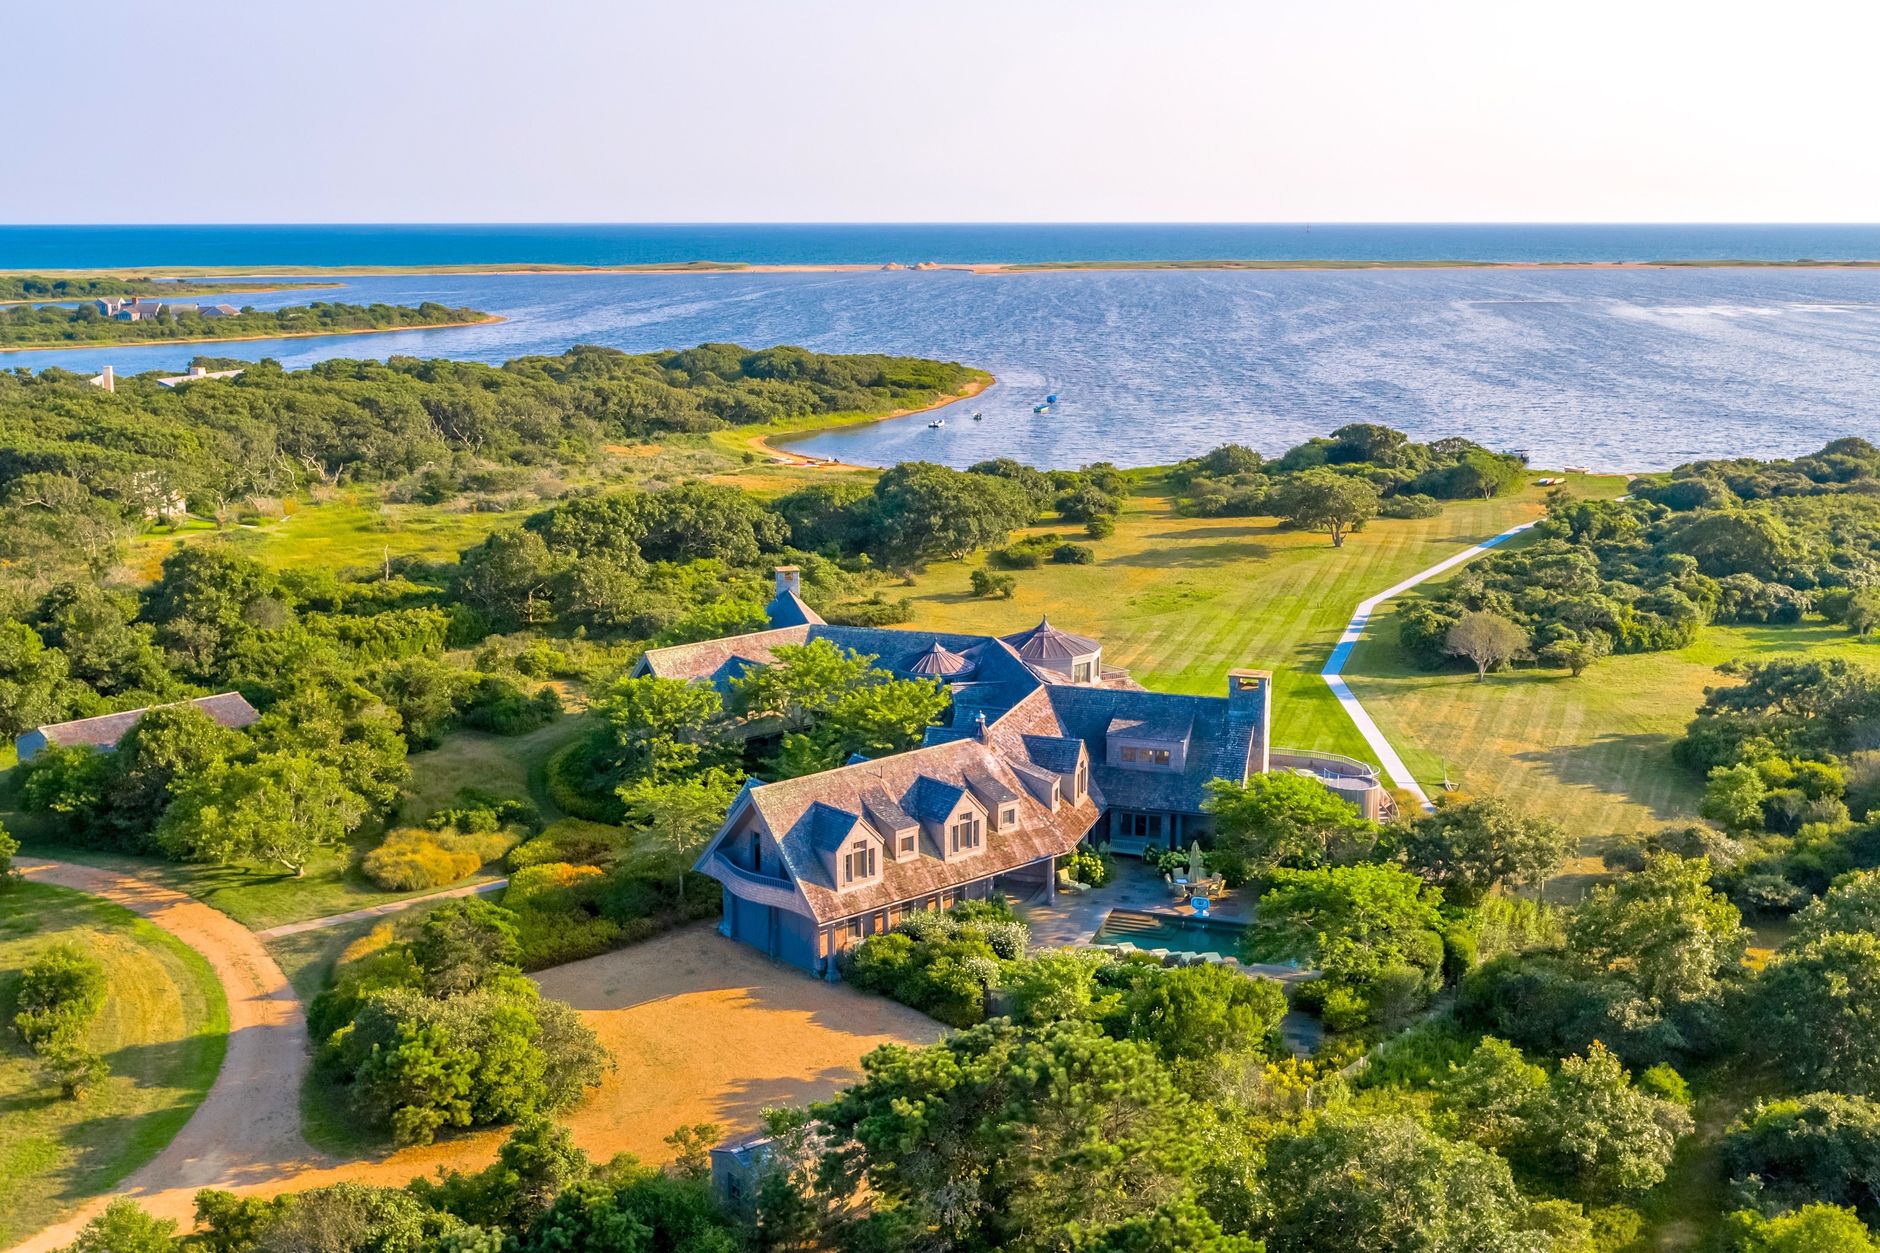 Дворец на острове и шикарное поместье в Вашингтоне: посмотрим, где живут Барак и Мишель Обама